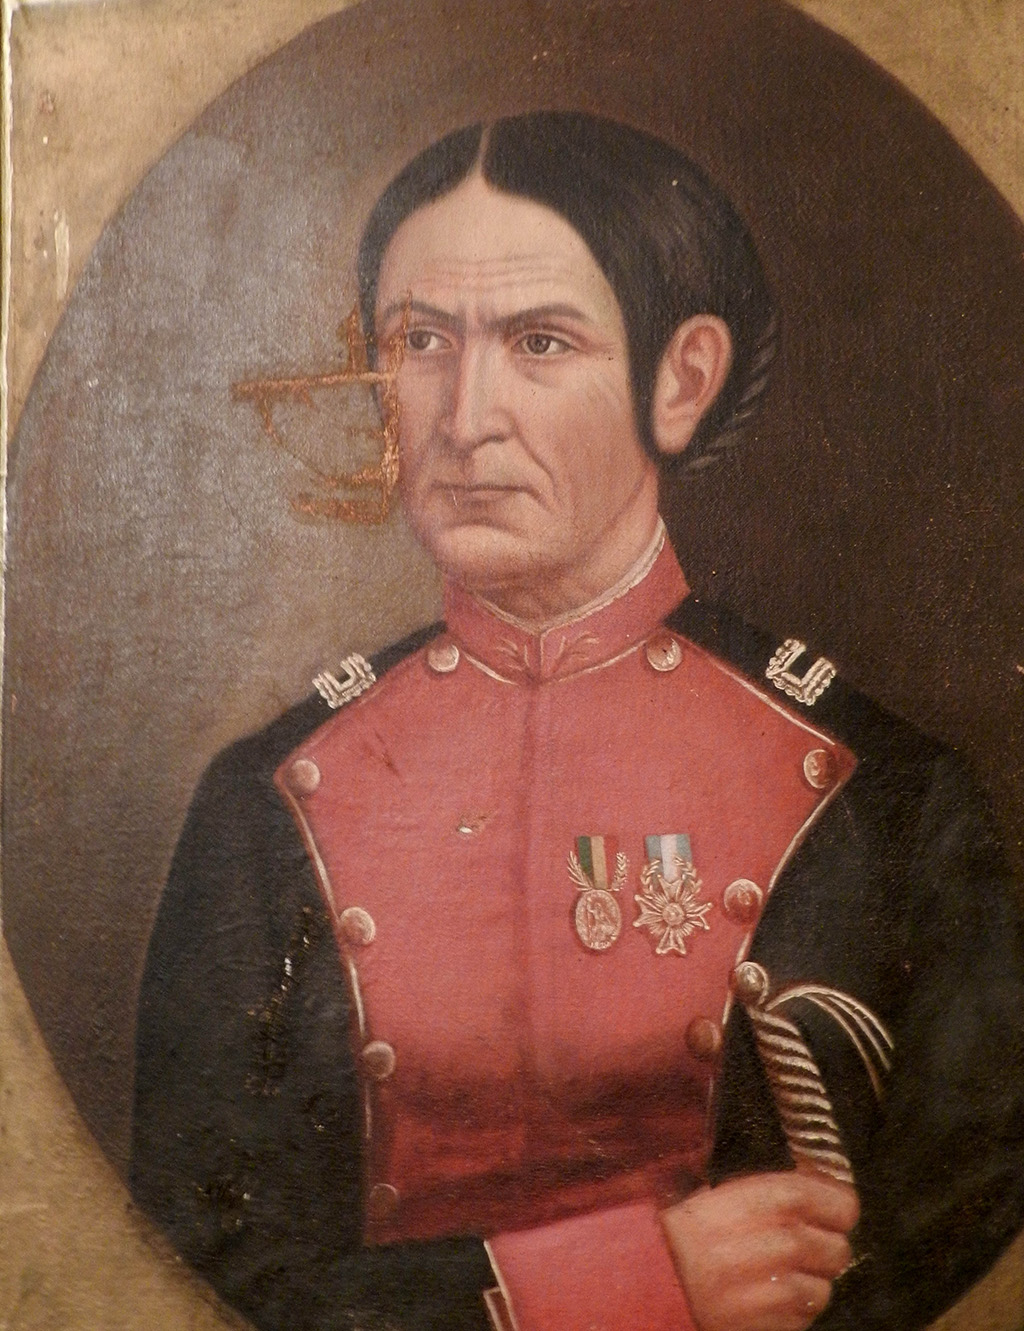 Retrato anónimo de Juana Azurduy con su uniforme de teniente coronel. Salón de Espejos de la Alcaldía de Padilla, Chuquisaca, Bolivia.